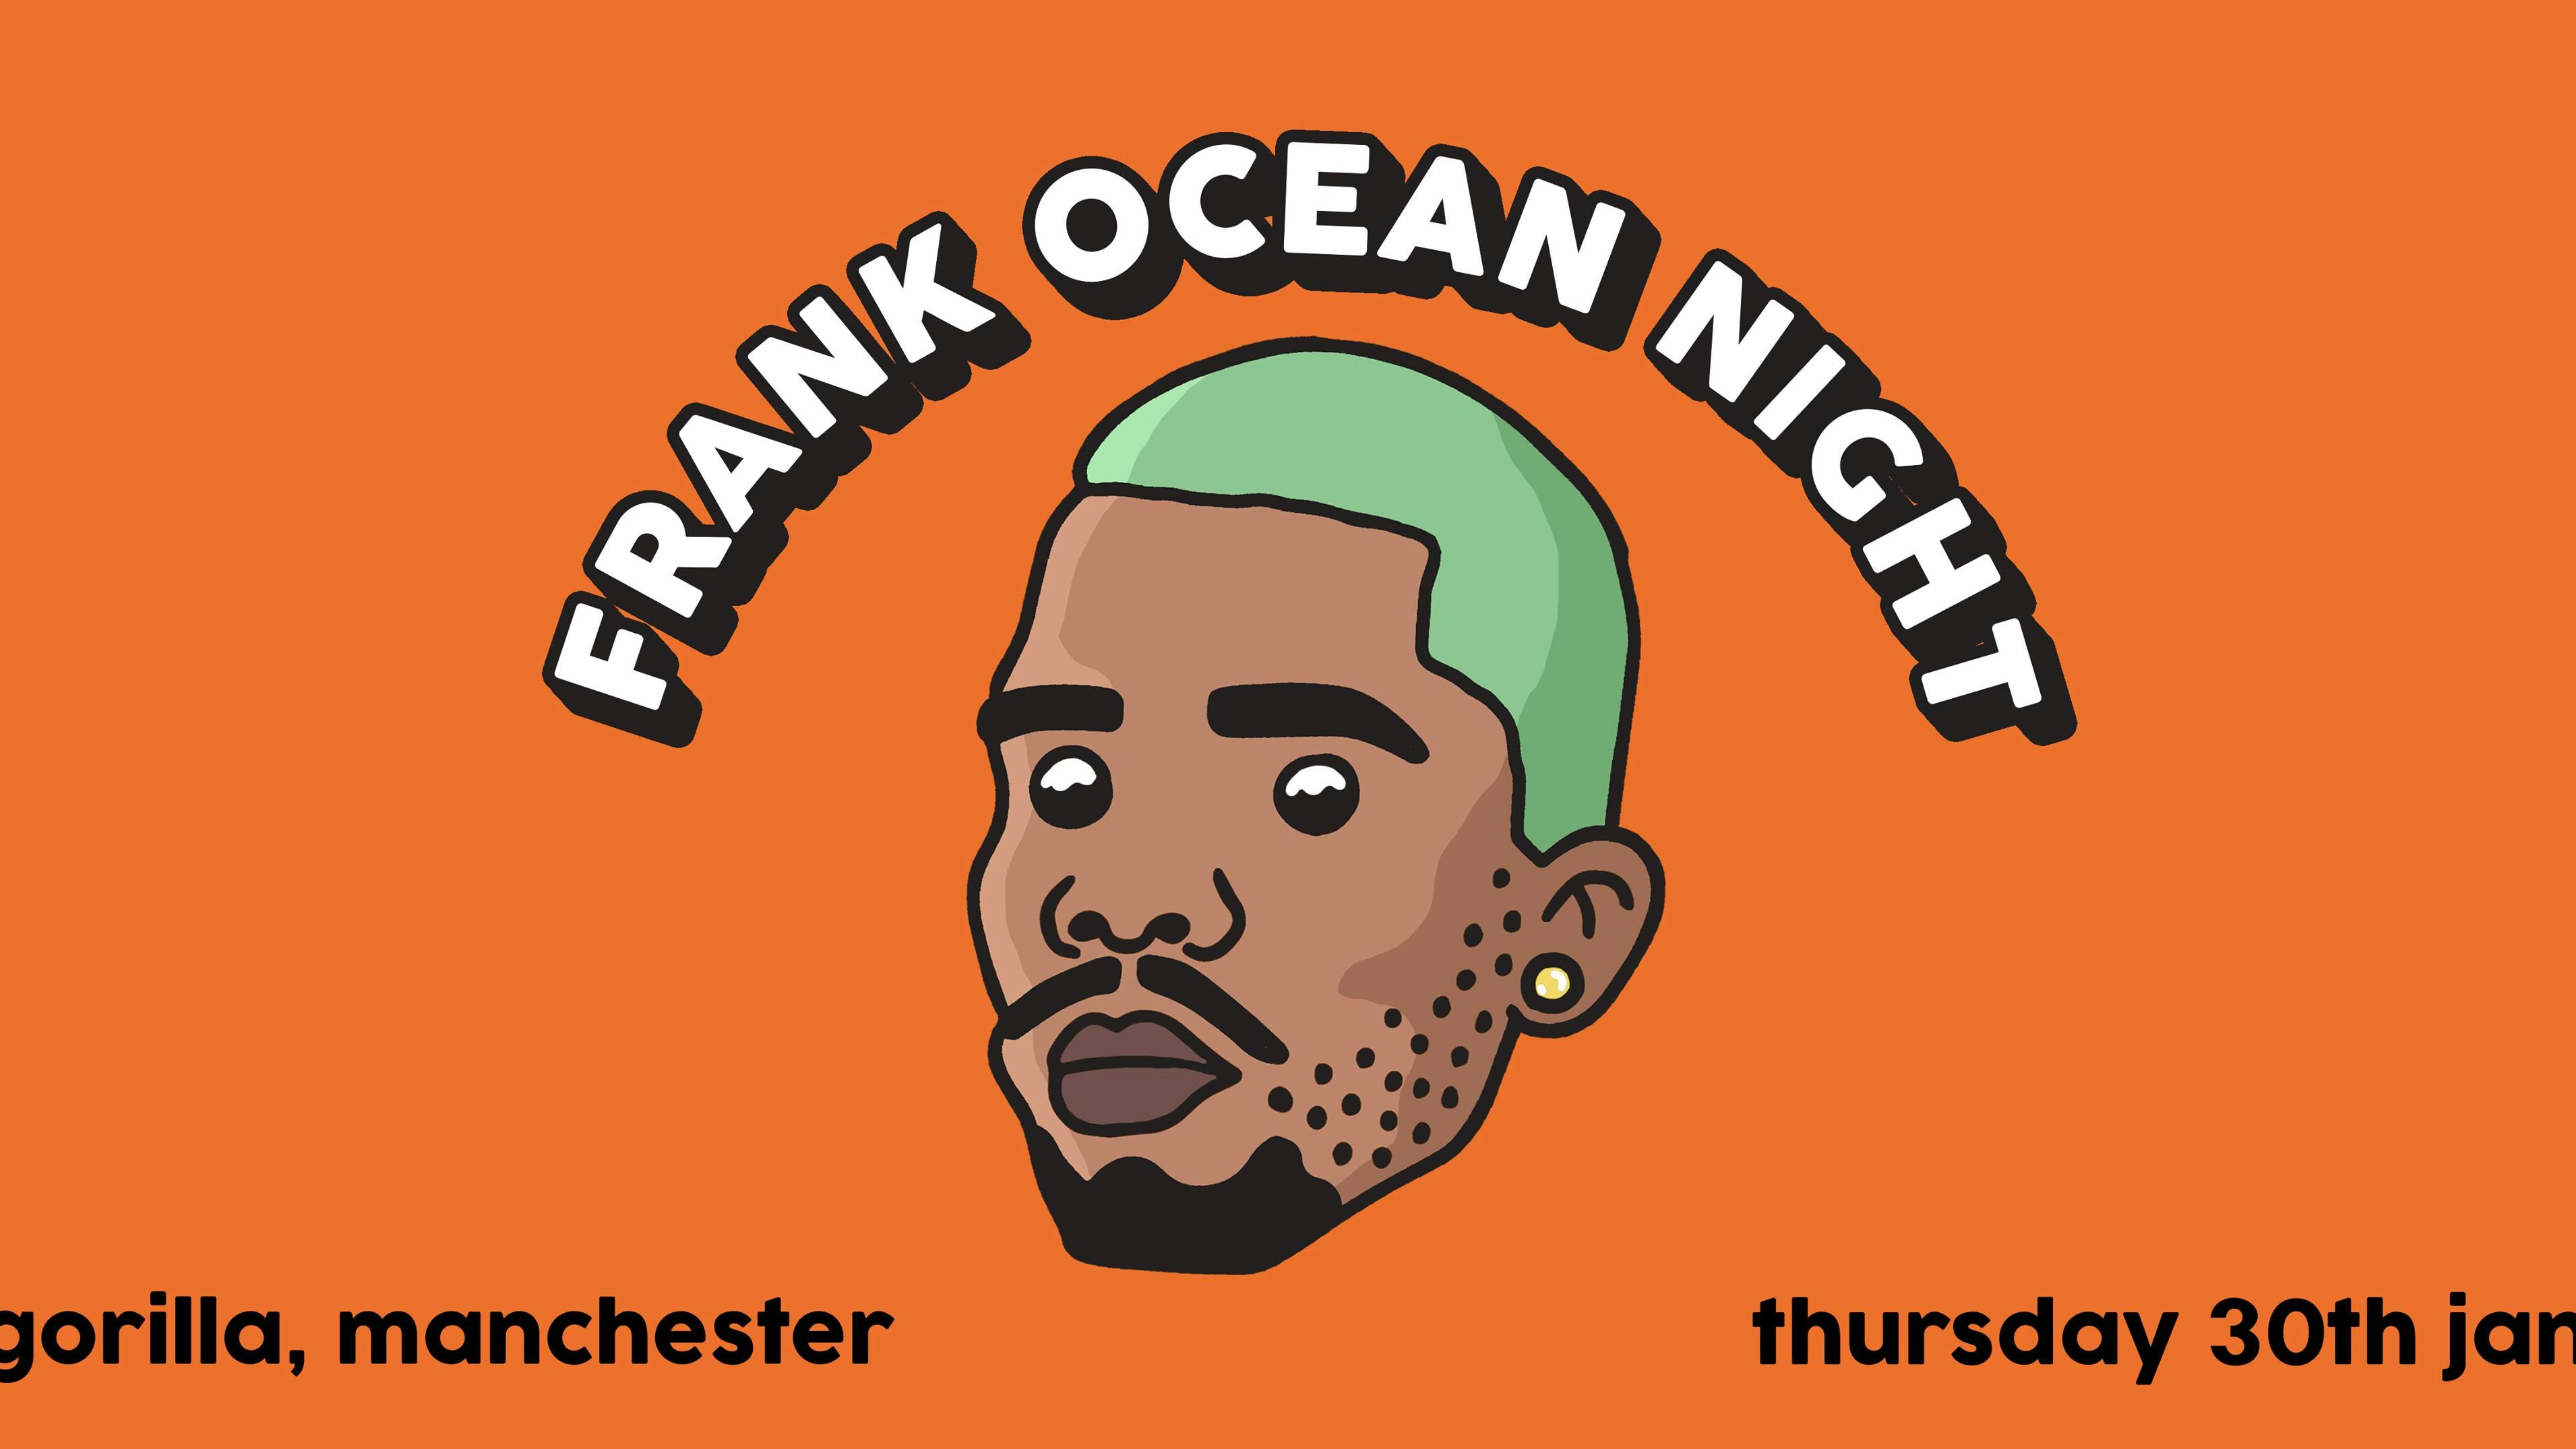 Frank Ocean Night